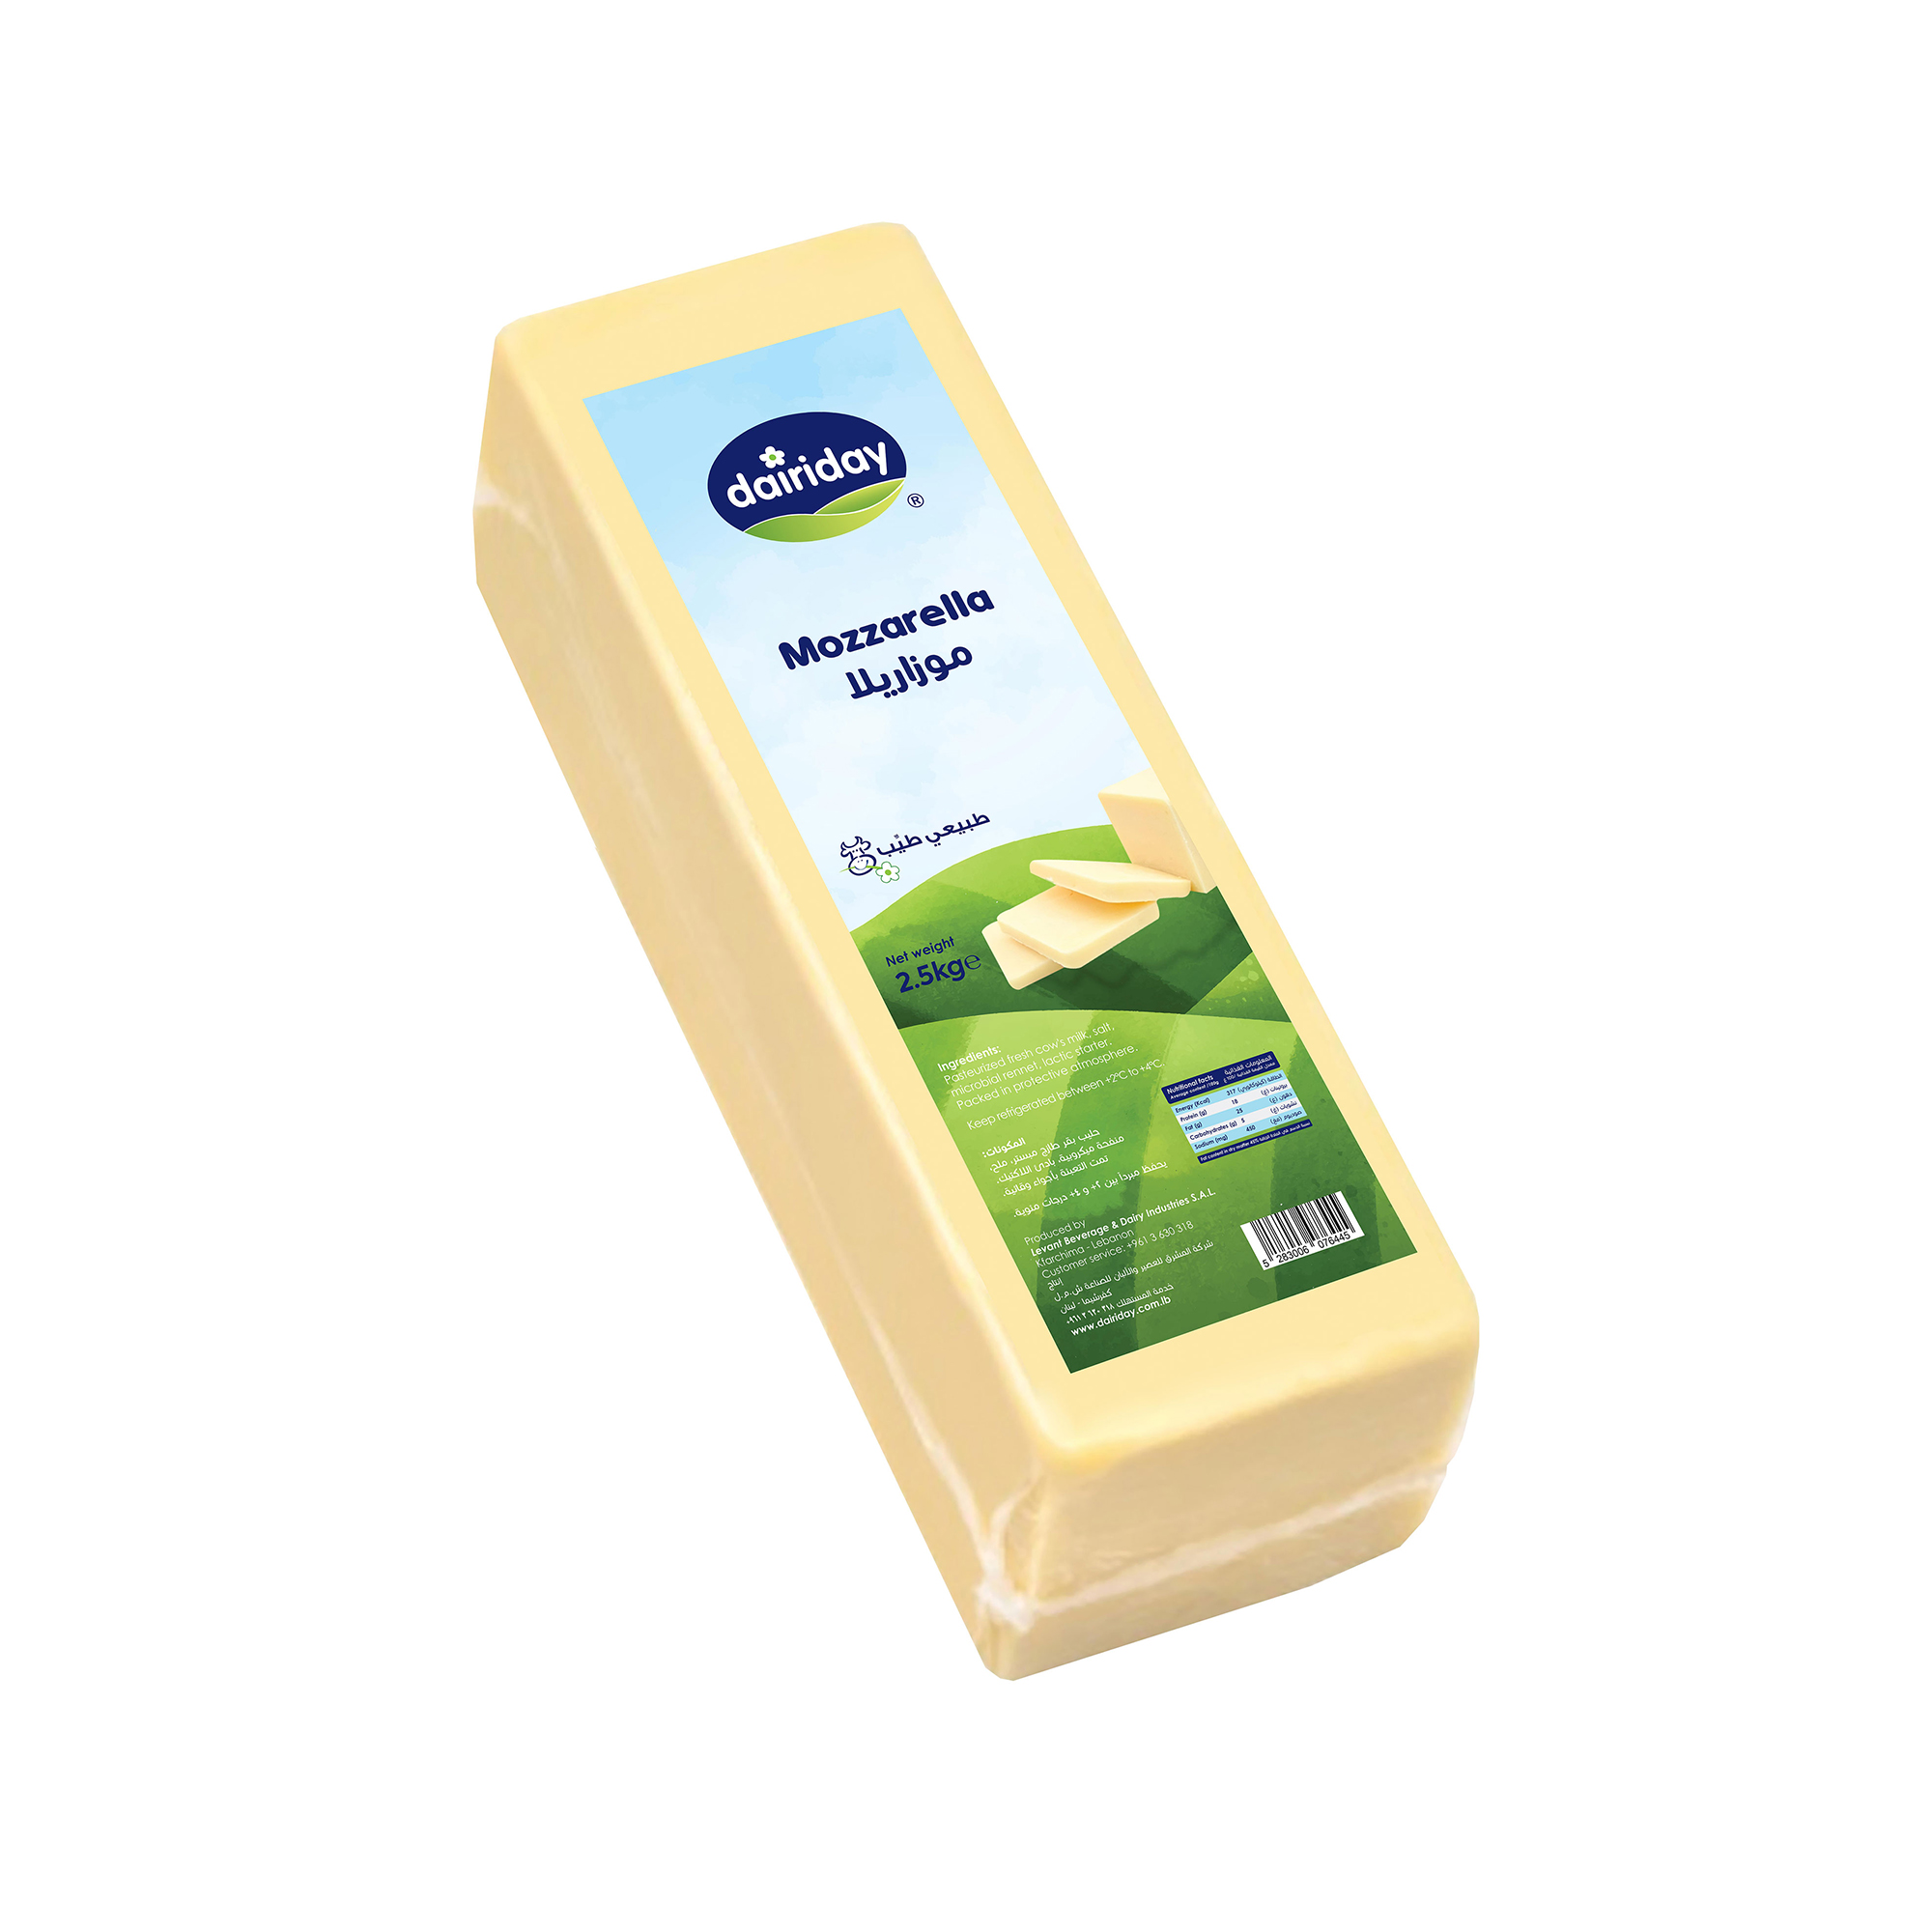 Dairiday-Mozzarella-2.5kg-cheese